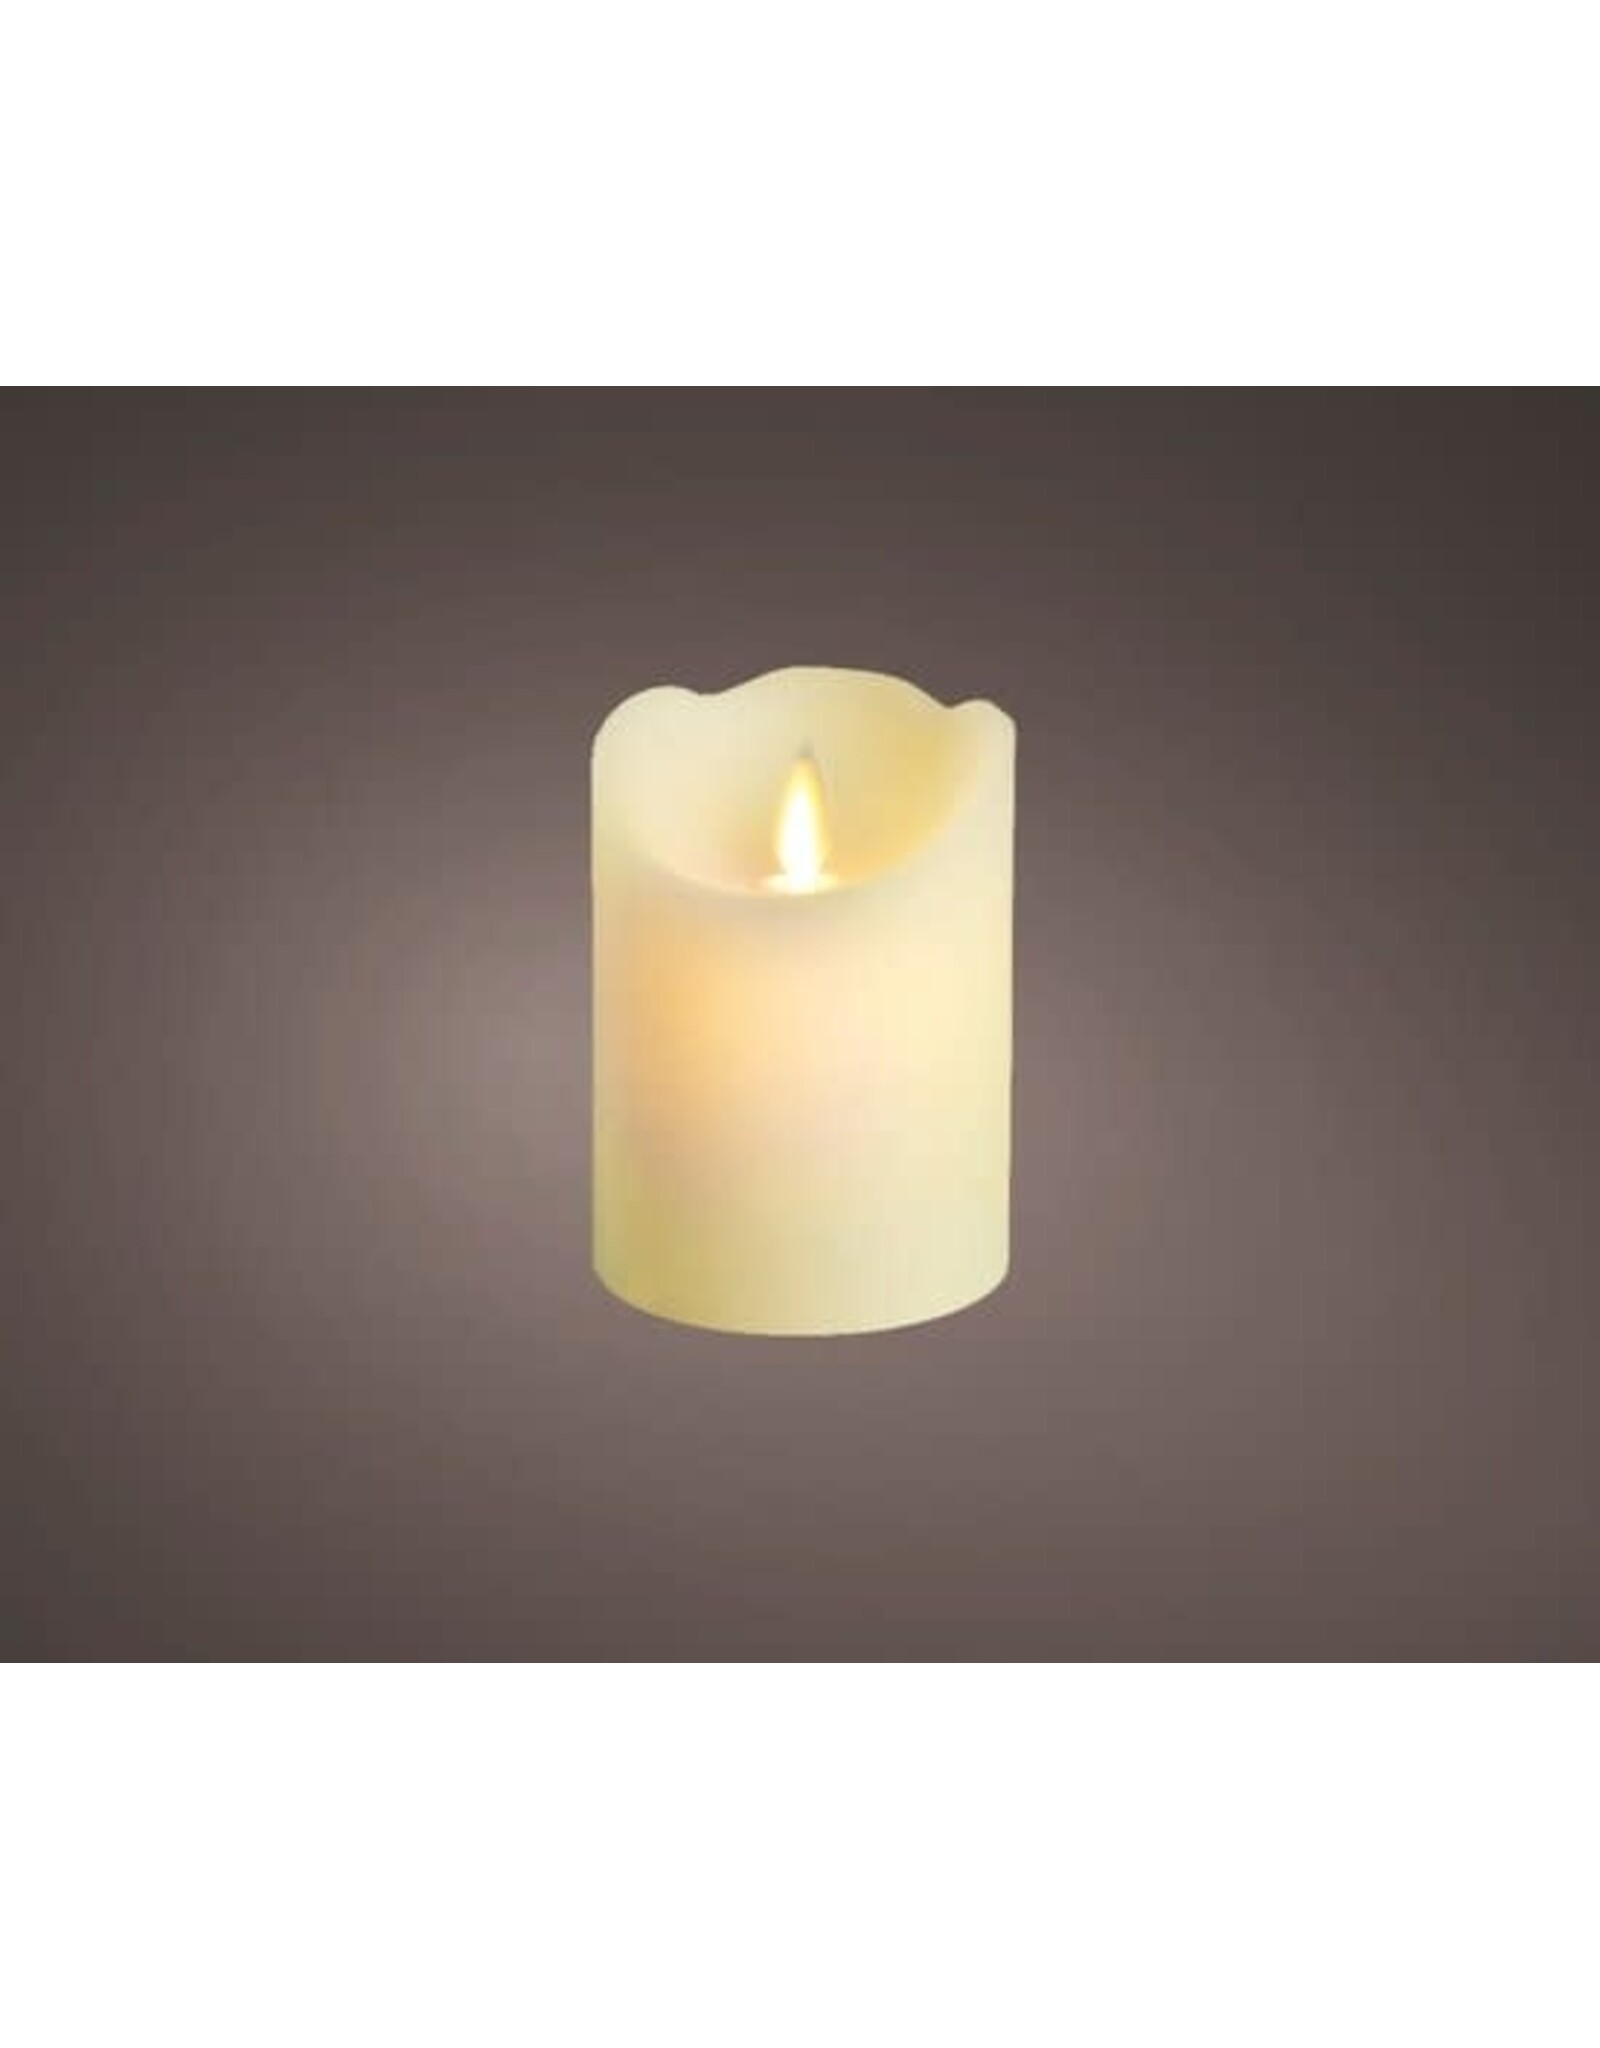 lumineo LED kaars/stompkaars creme wit 10 cm flakkerend - Kerst diner tafeldecoratie - Home deco kaarsen